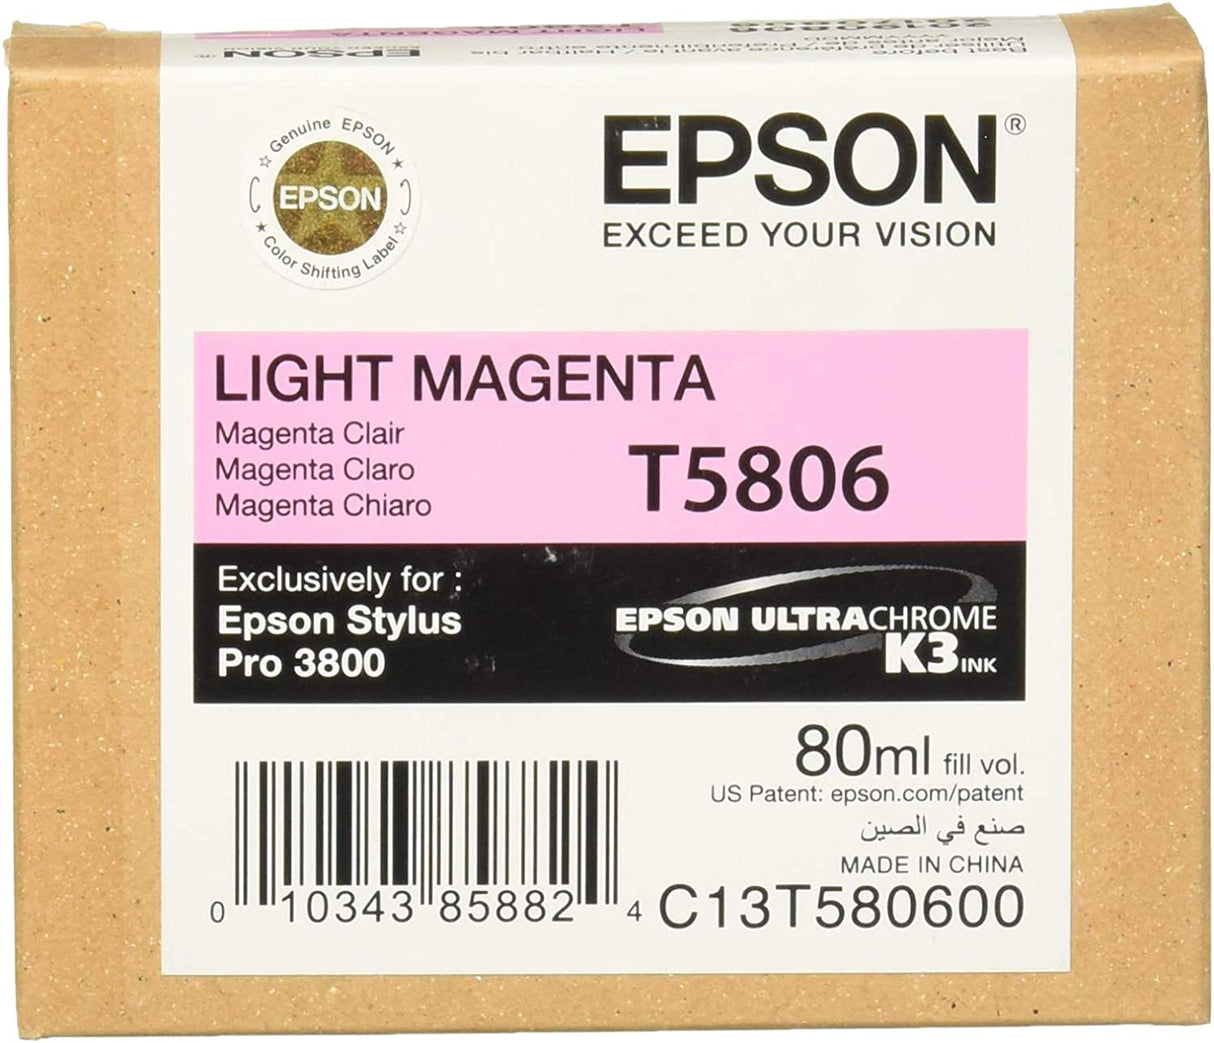 Epson T5806 UltraChrome K3 Light Magenta Cartridge Ink